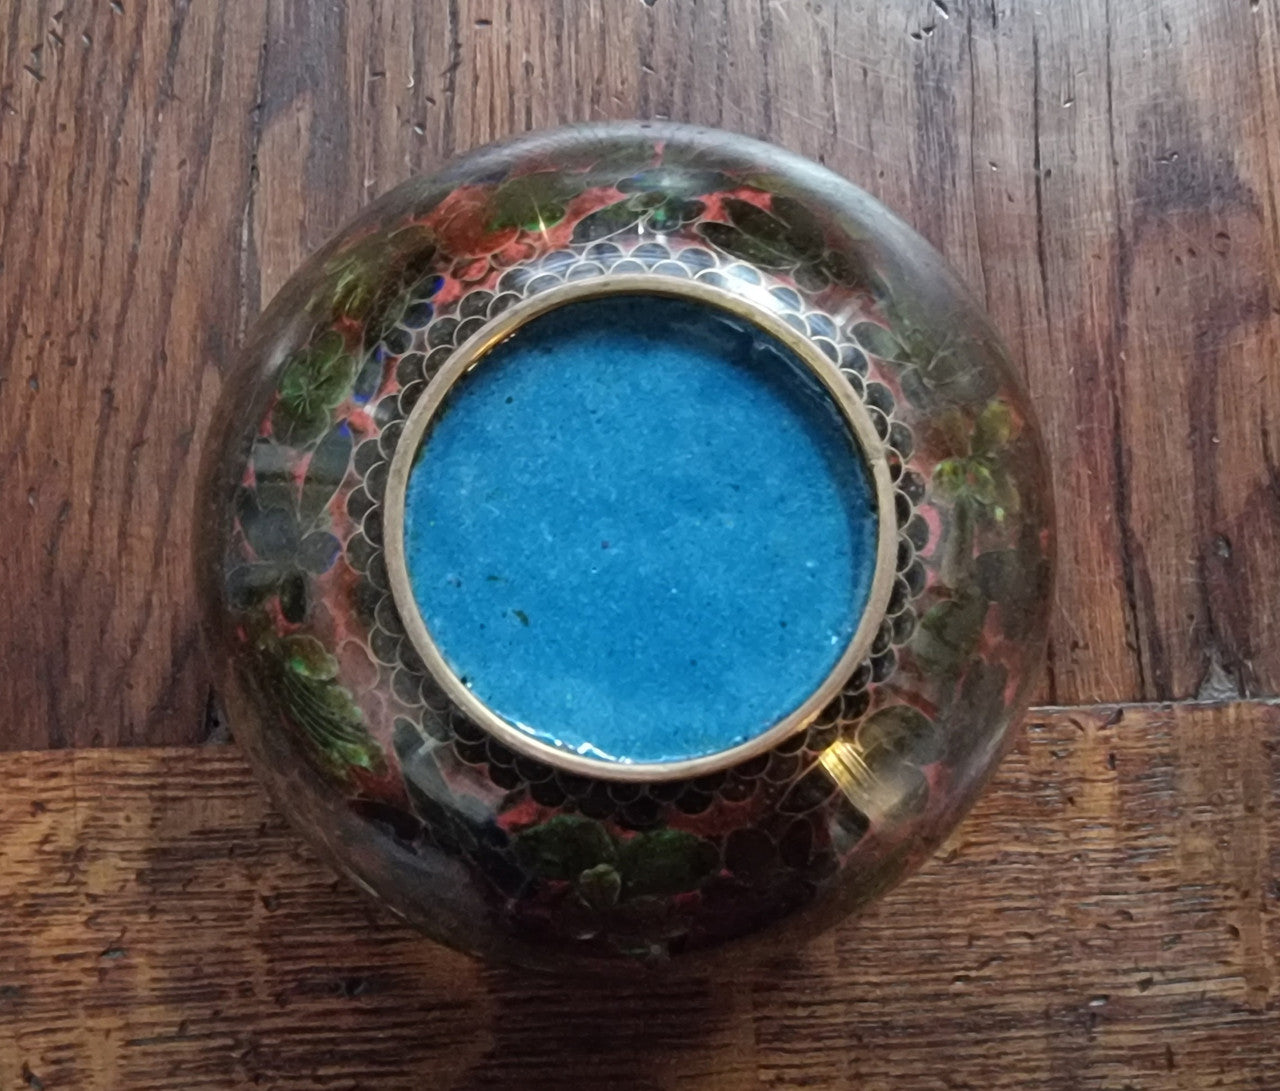 Vintage Cloisonné Vase With a Great Colour Combination